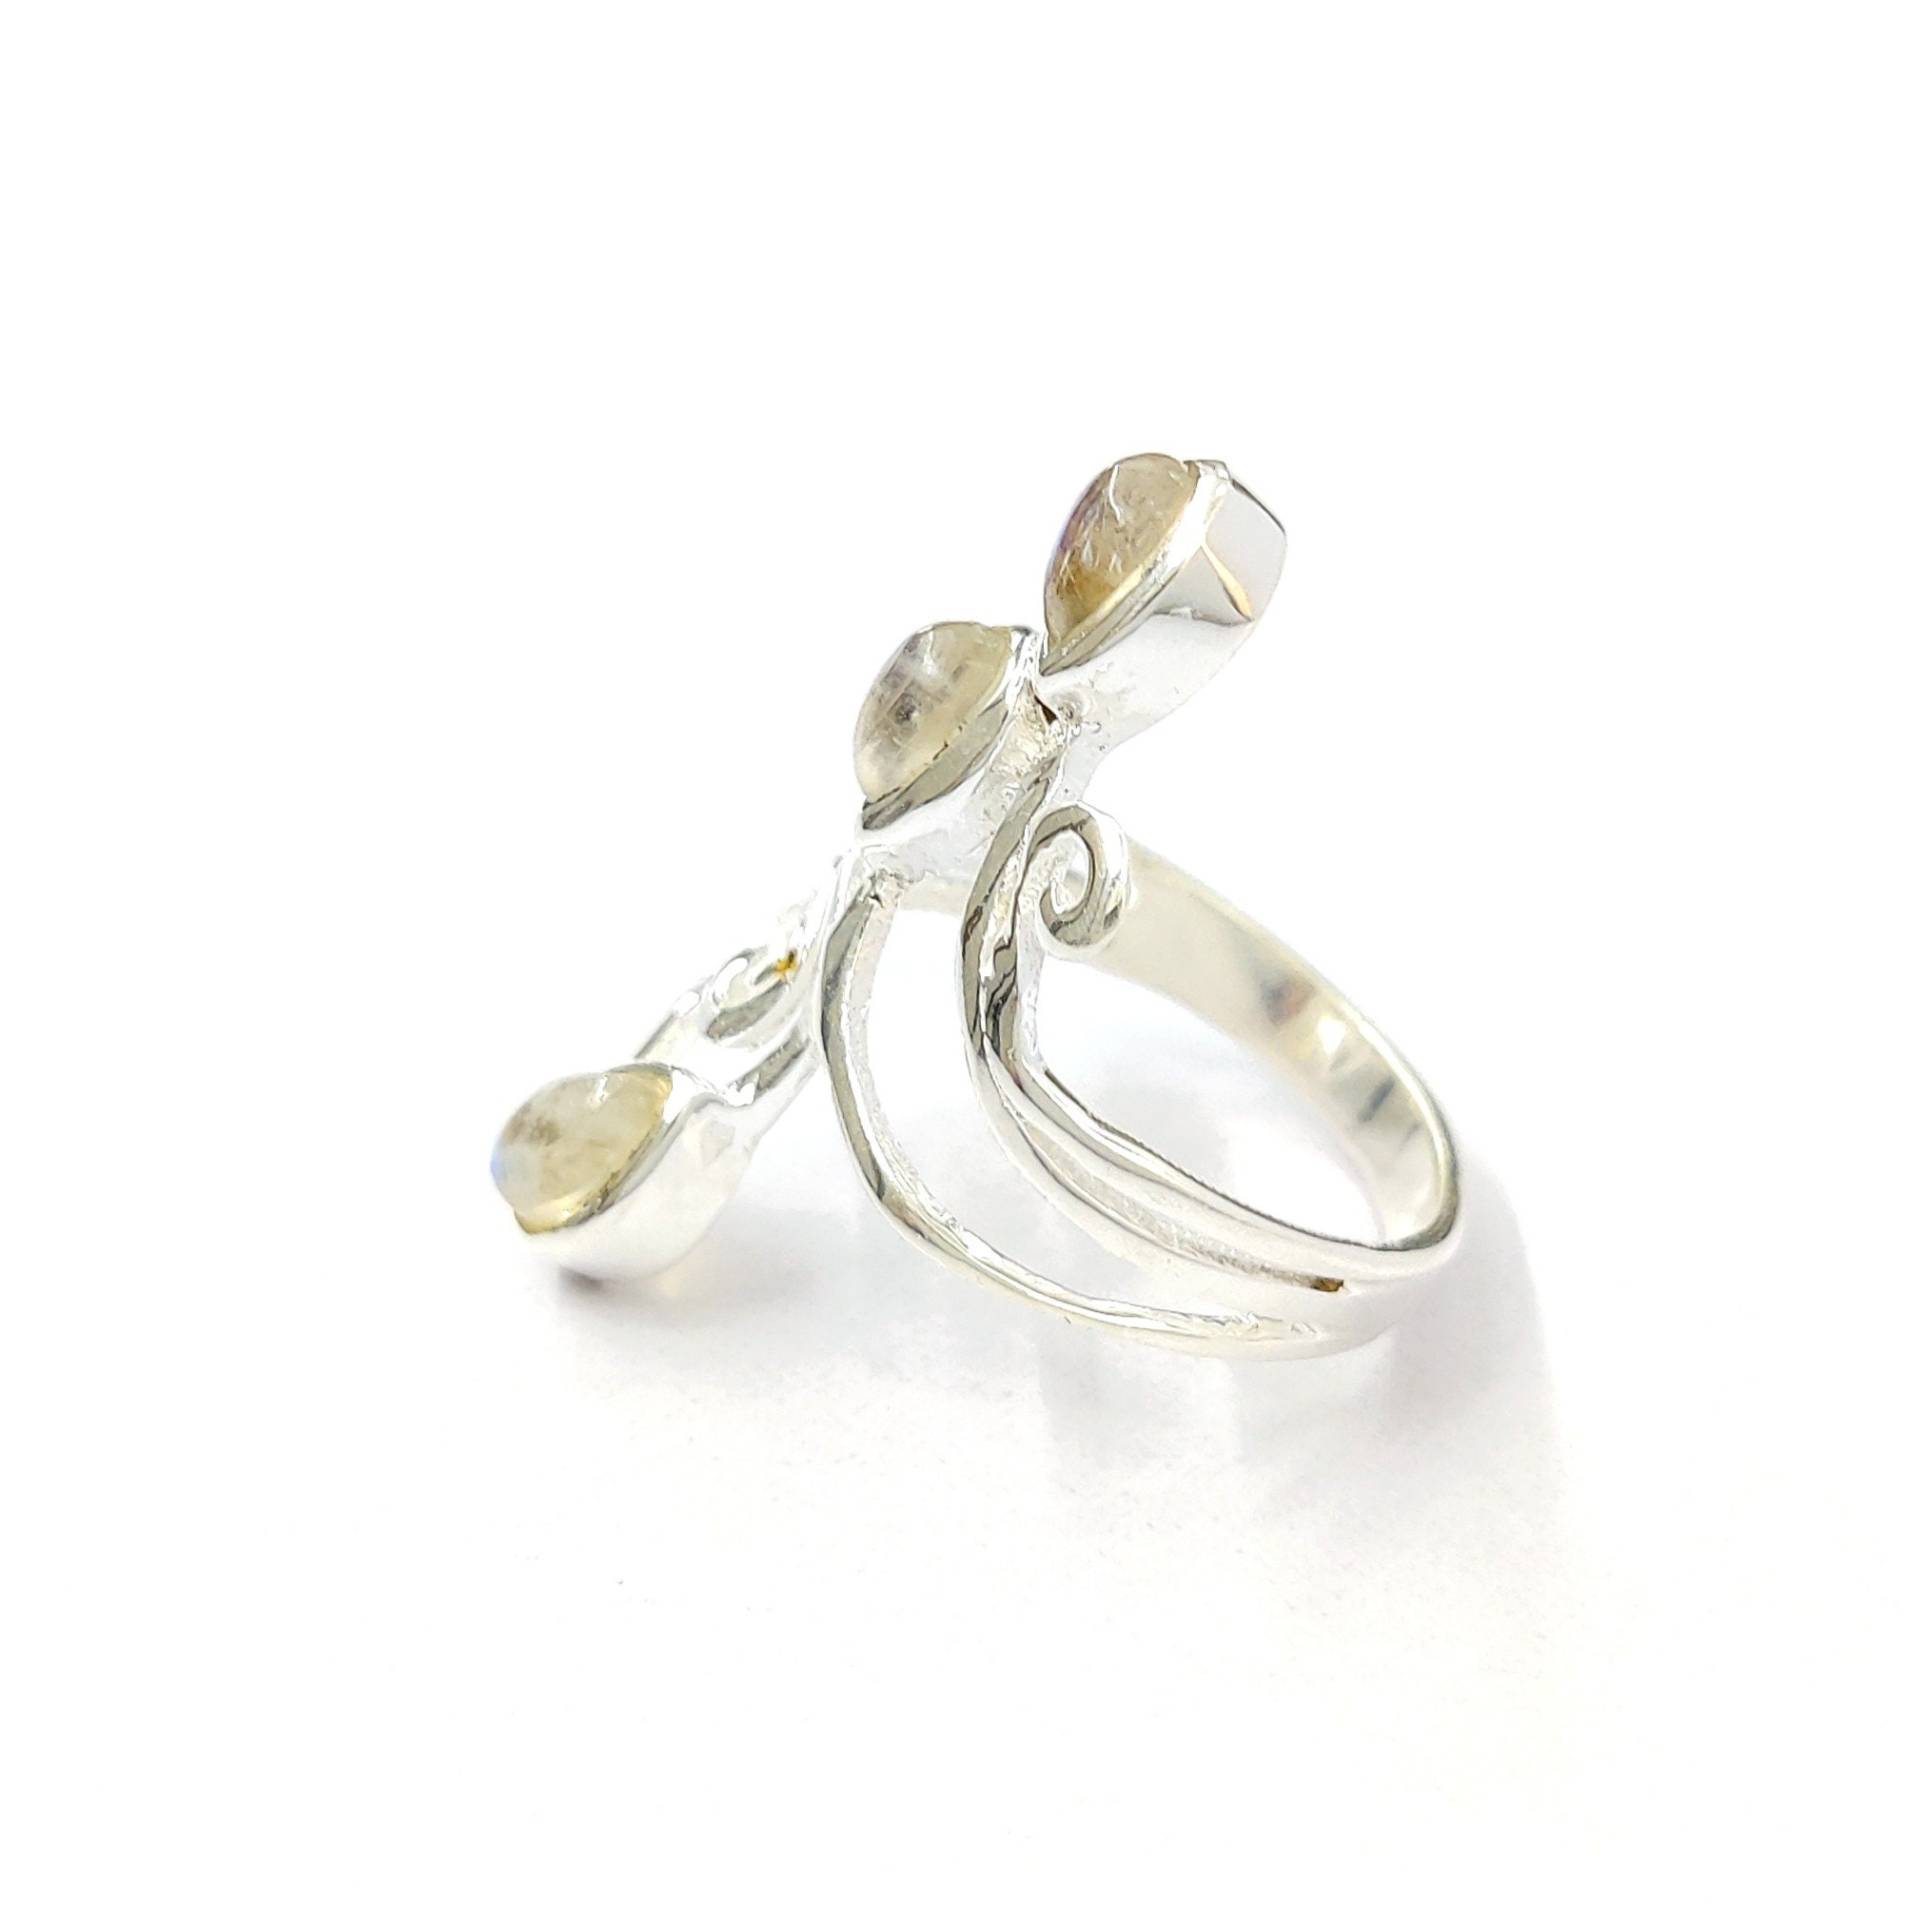 Mondstein Silber Ring-925 Sterling Silber-Frauen Ring-Ring Für Geschenk-Handmade Ring-Statement Ring-Einstellbar Ring-Trend Ring-Mode Ring von Moonstoneringstore